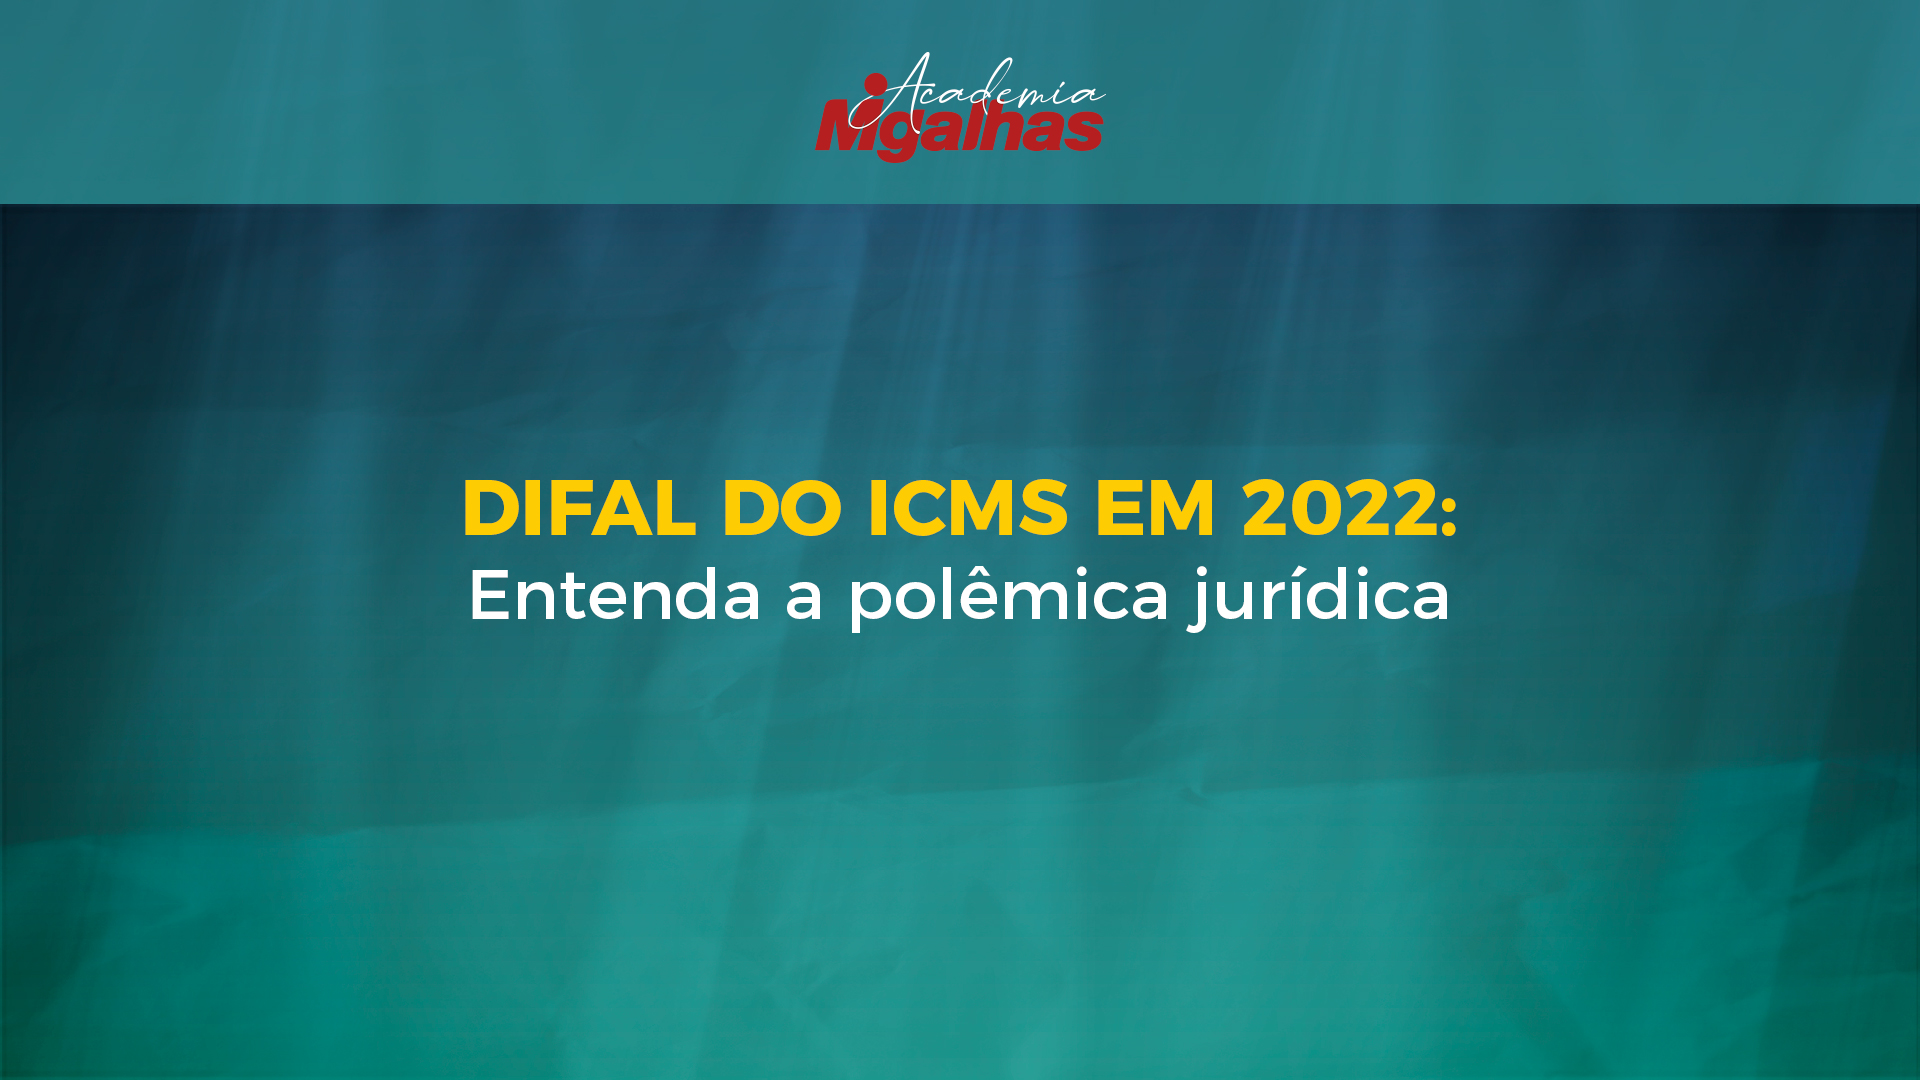 Difal do ICMS em 2022: Entenda a polêmica jurídica